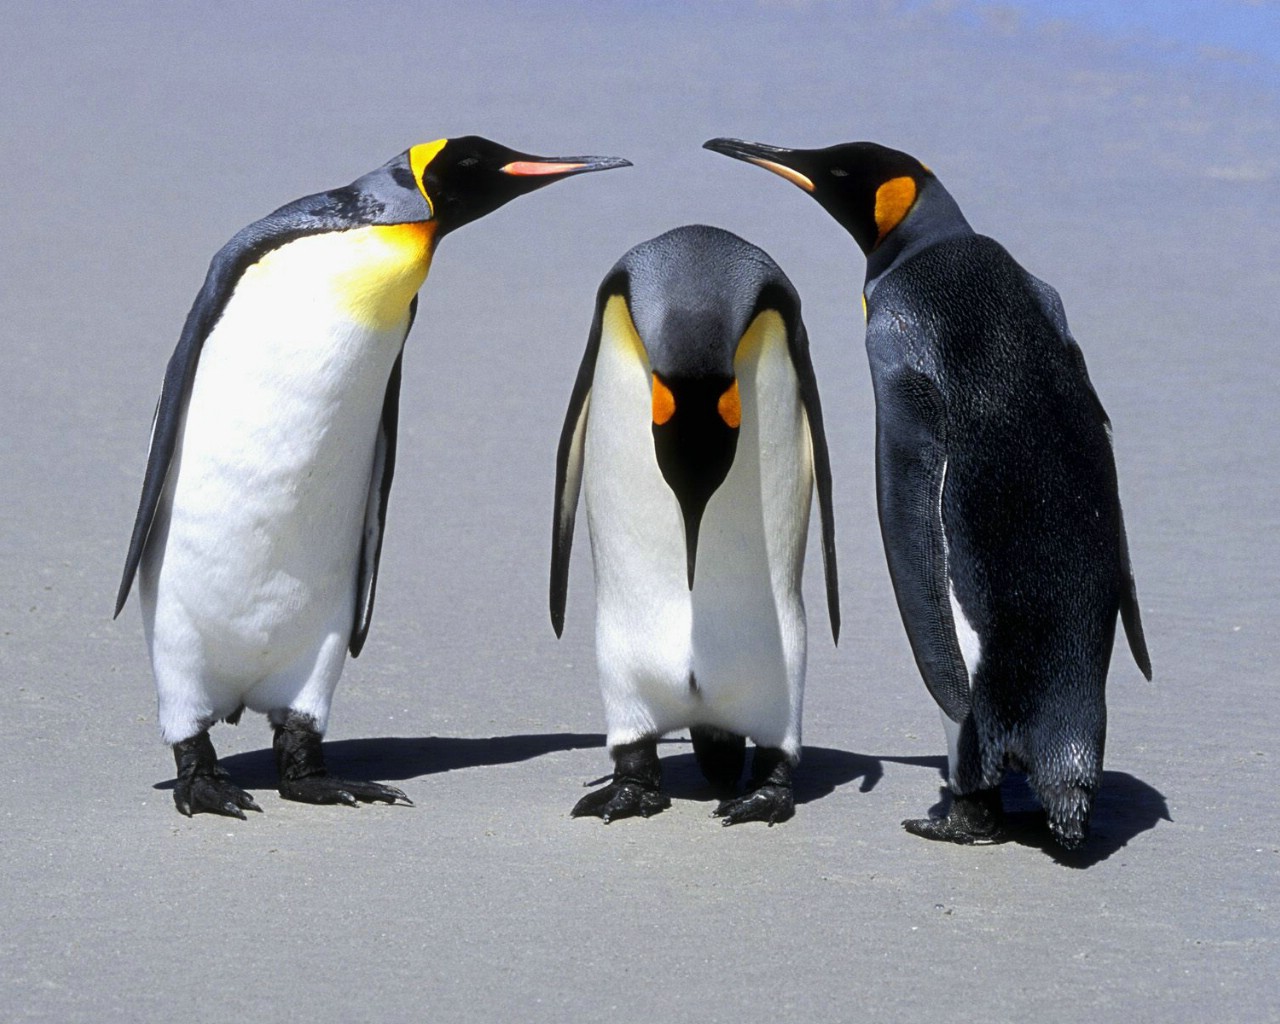 壁纸1280x1024 Penguins Falkland Islands 福克兰群岛企鹅图片壁纸壁纸 大尺寸世界各地动物壁纸精选 第一辑壁纸 大尺寸世界各地动物壁纸精选 第一辑图片 大尺寸世界各地动物壁纸精选 第一辑素材 动物壁纸 动物图库 动物图片素材桌面壁纸